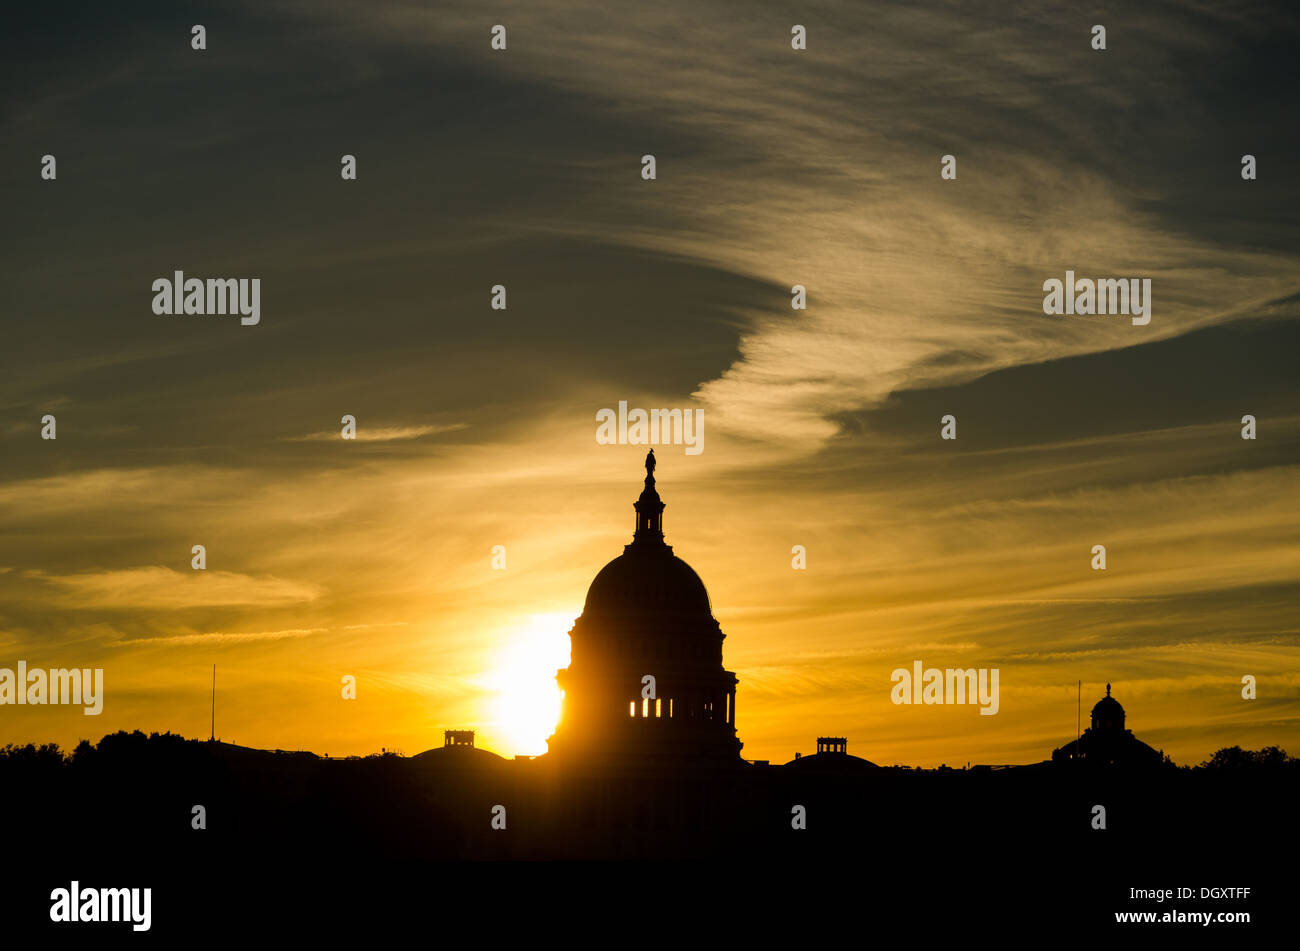 WASHINGTON DC, USA - Die Sonne hinter der Silhouette der Dom des US Capitol Building (Kongress) in Washington DC, wodurch die Leuchten aufleuchten. Stockfoto